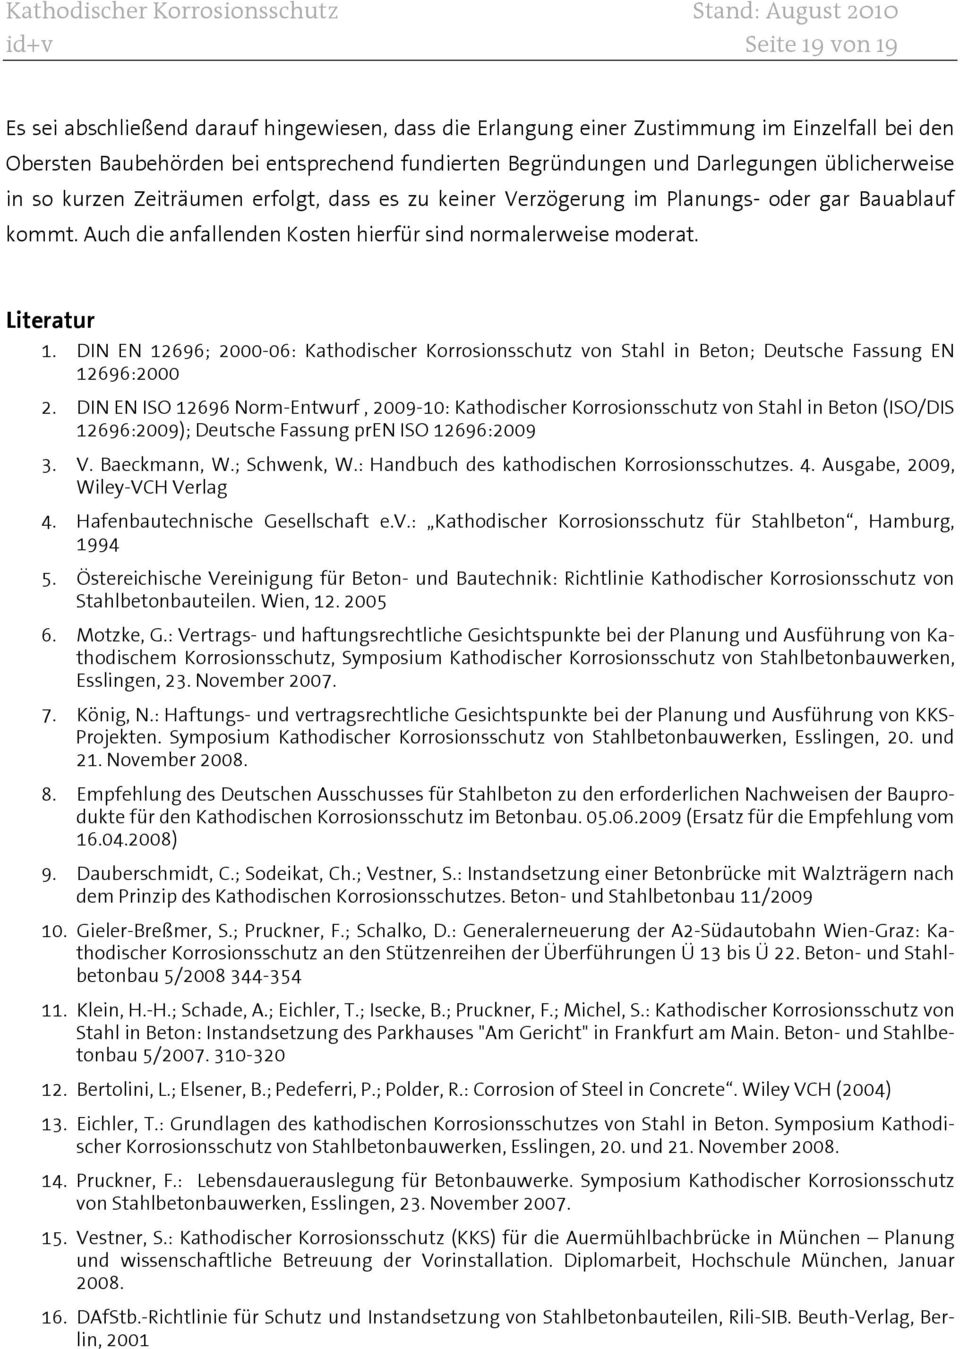 DIN EN 12696; 2000-06: Kathodischer Korrosionsschutz von Stahl in Beton; Deutsche Fassung EN 12696:2000 2.